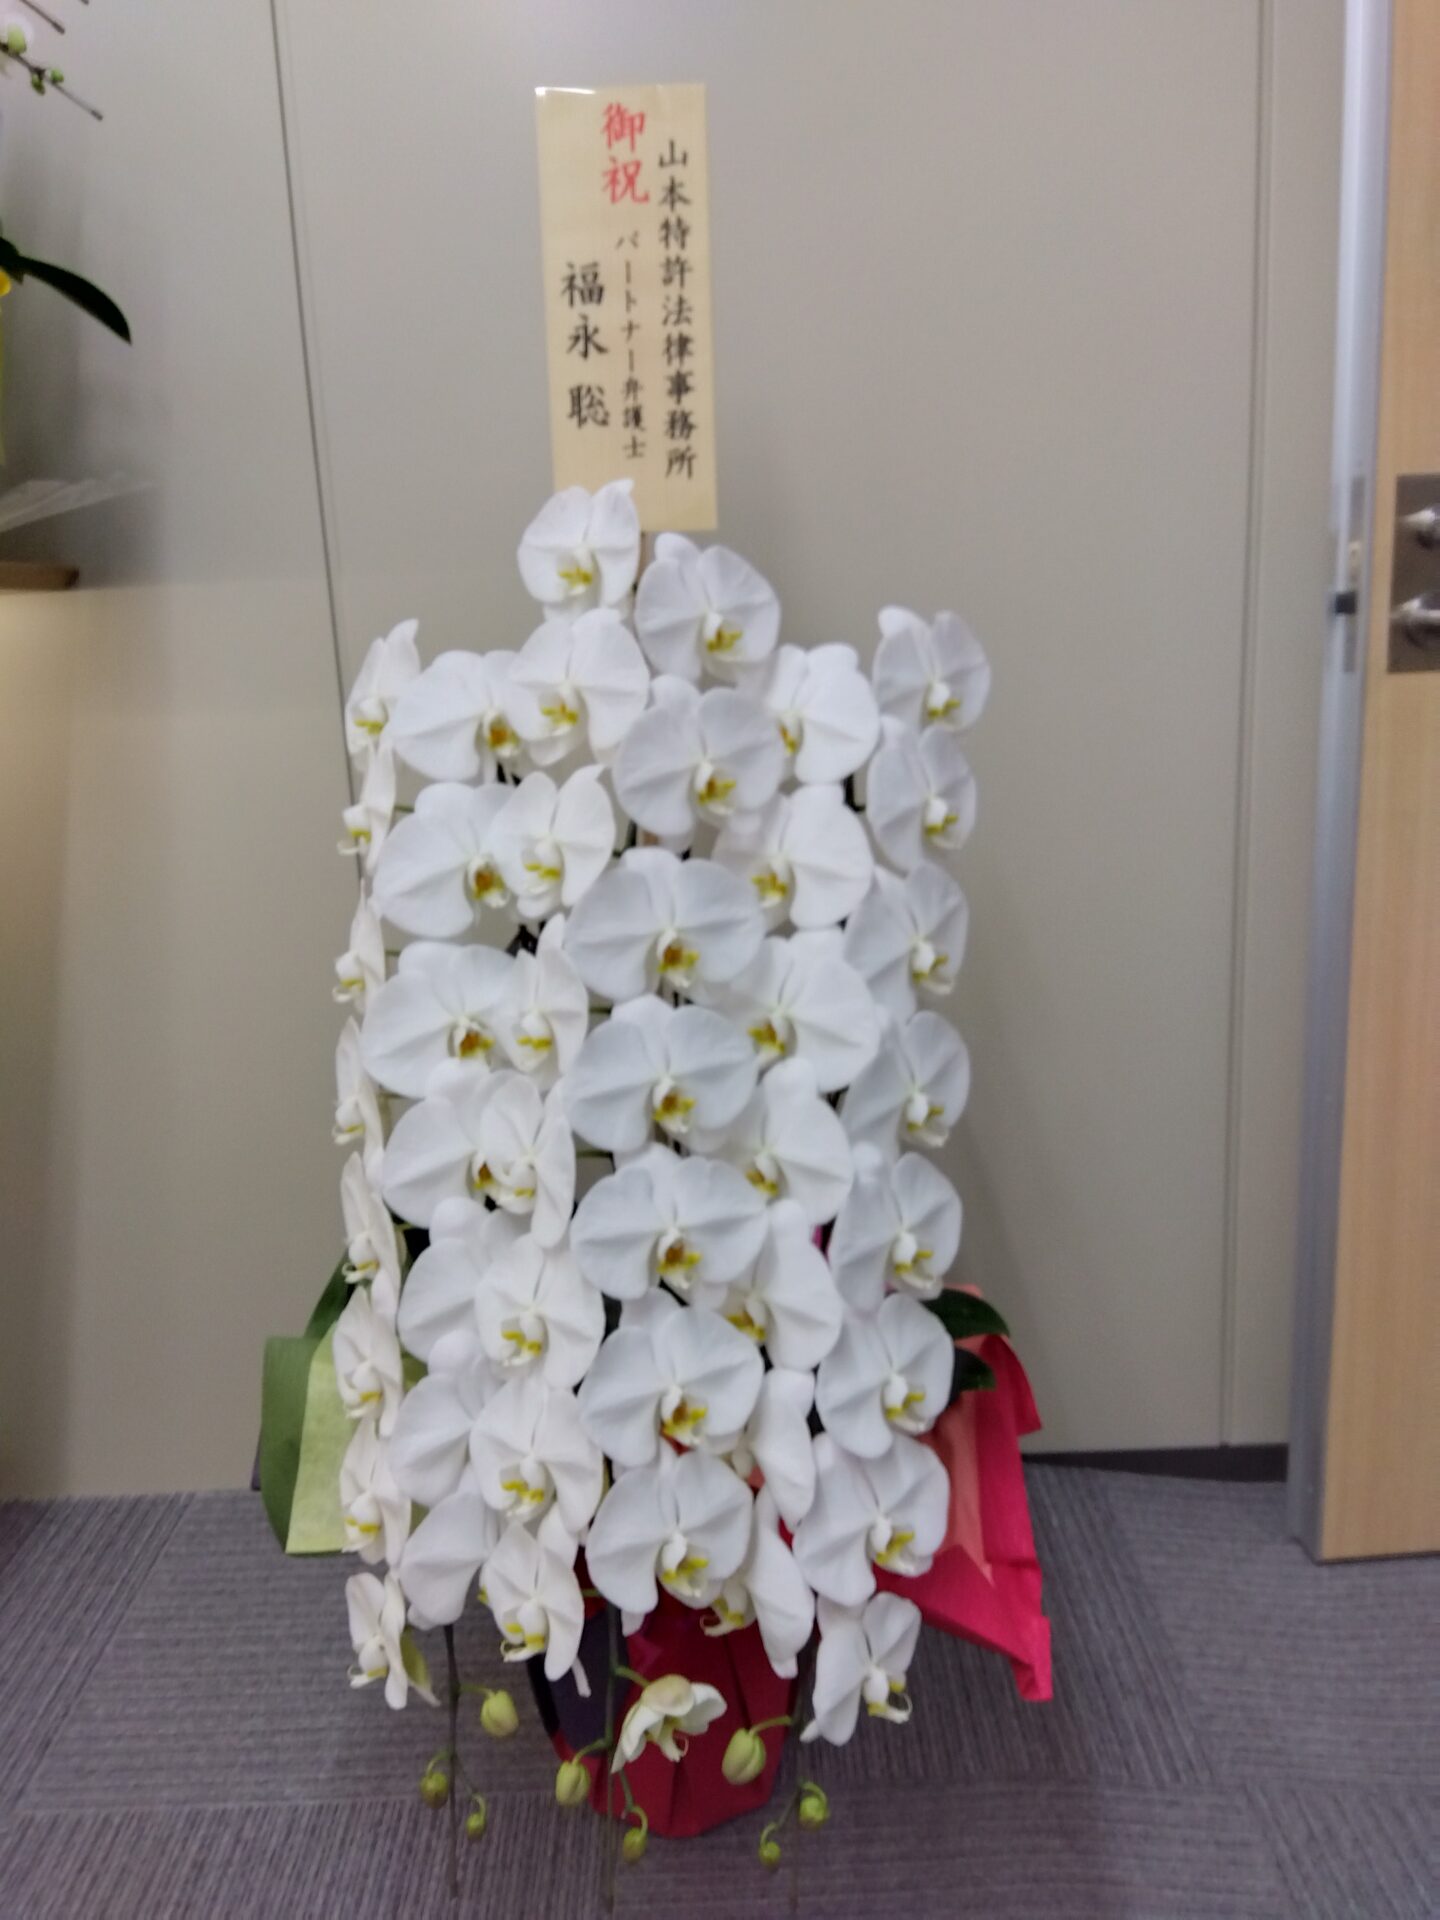 大阪市 中央区へ事務所移転お祝いの胡蝶蘭